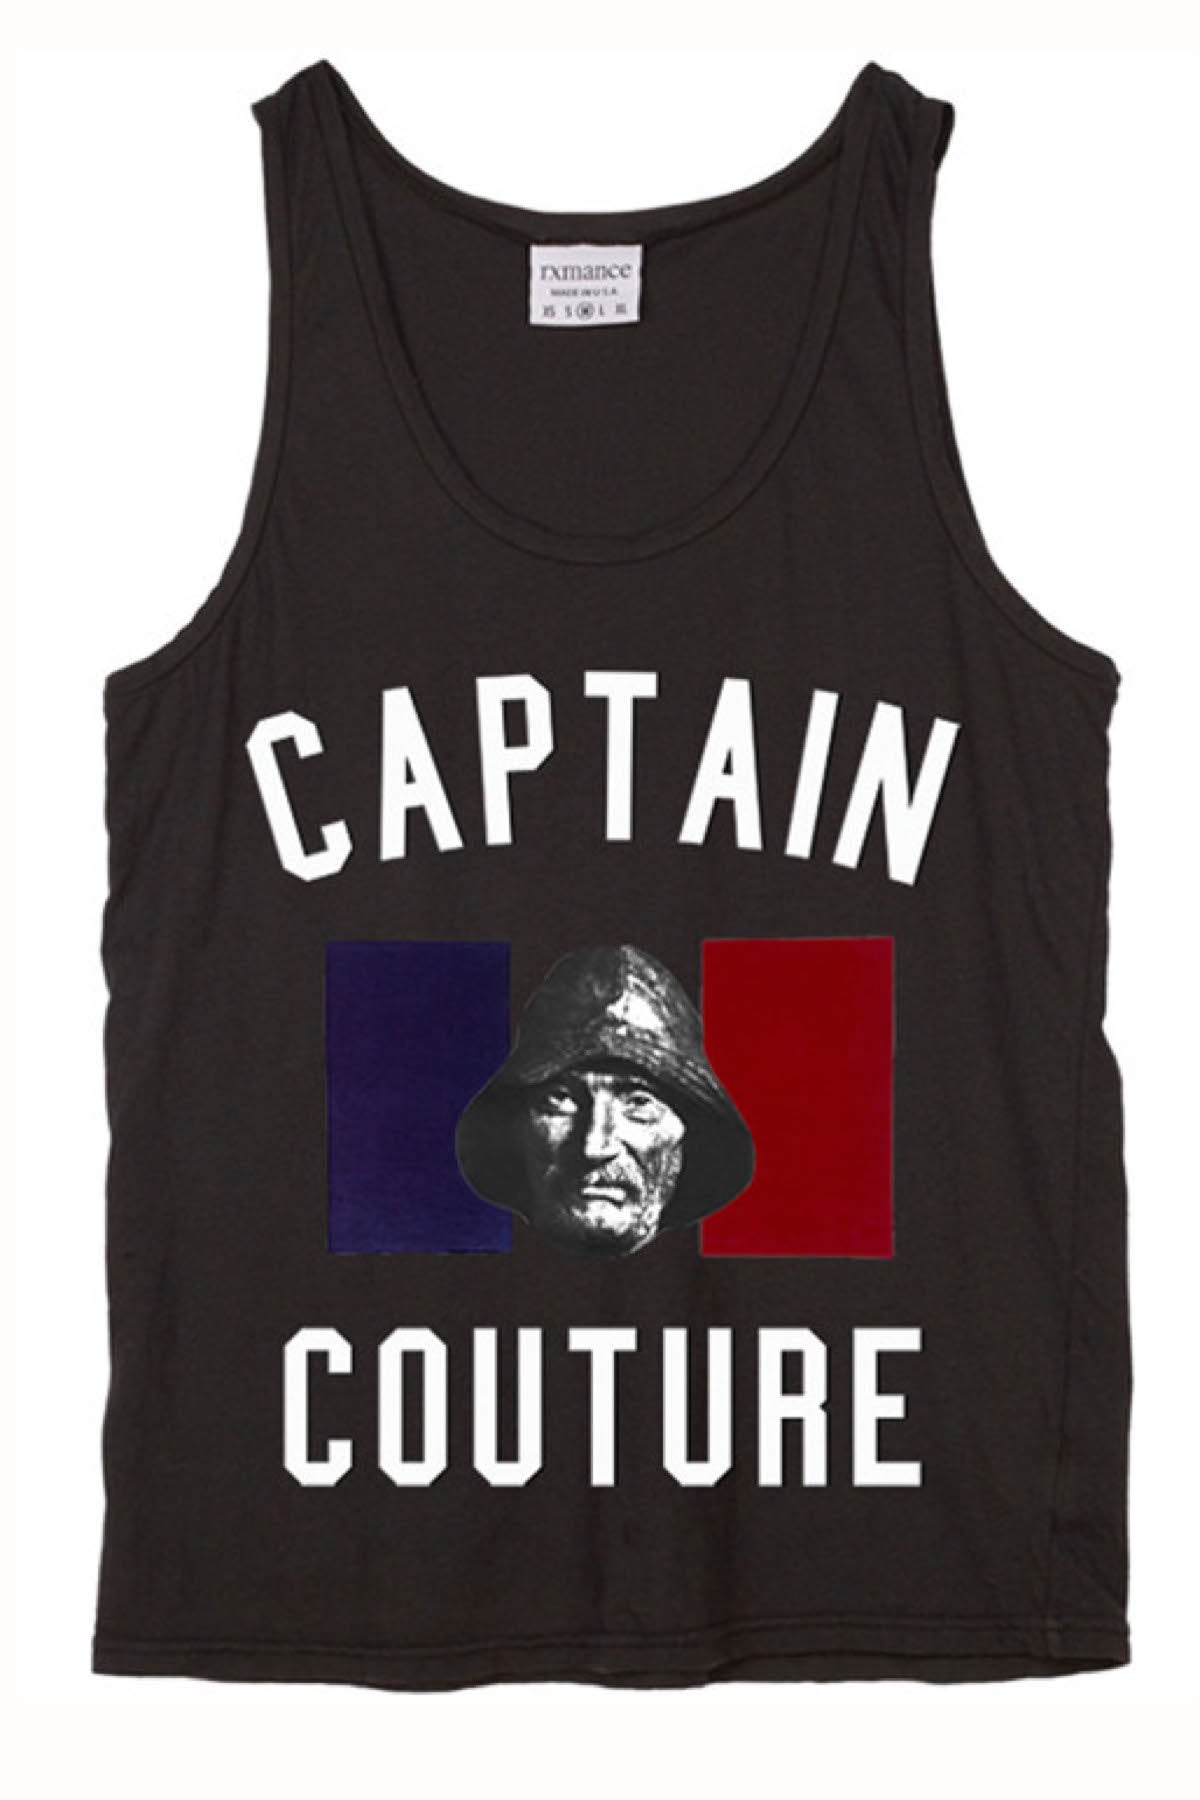 Rxmance Black Captain Couture Tank Top